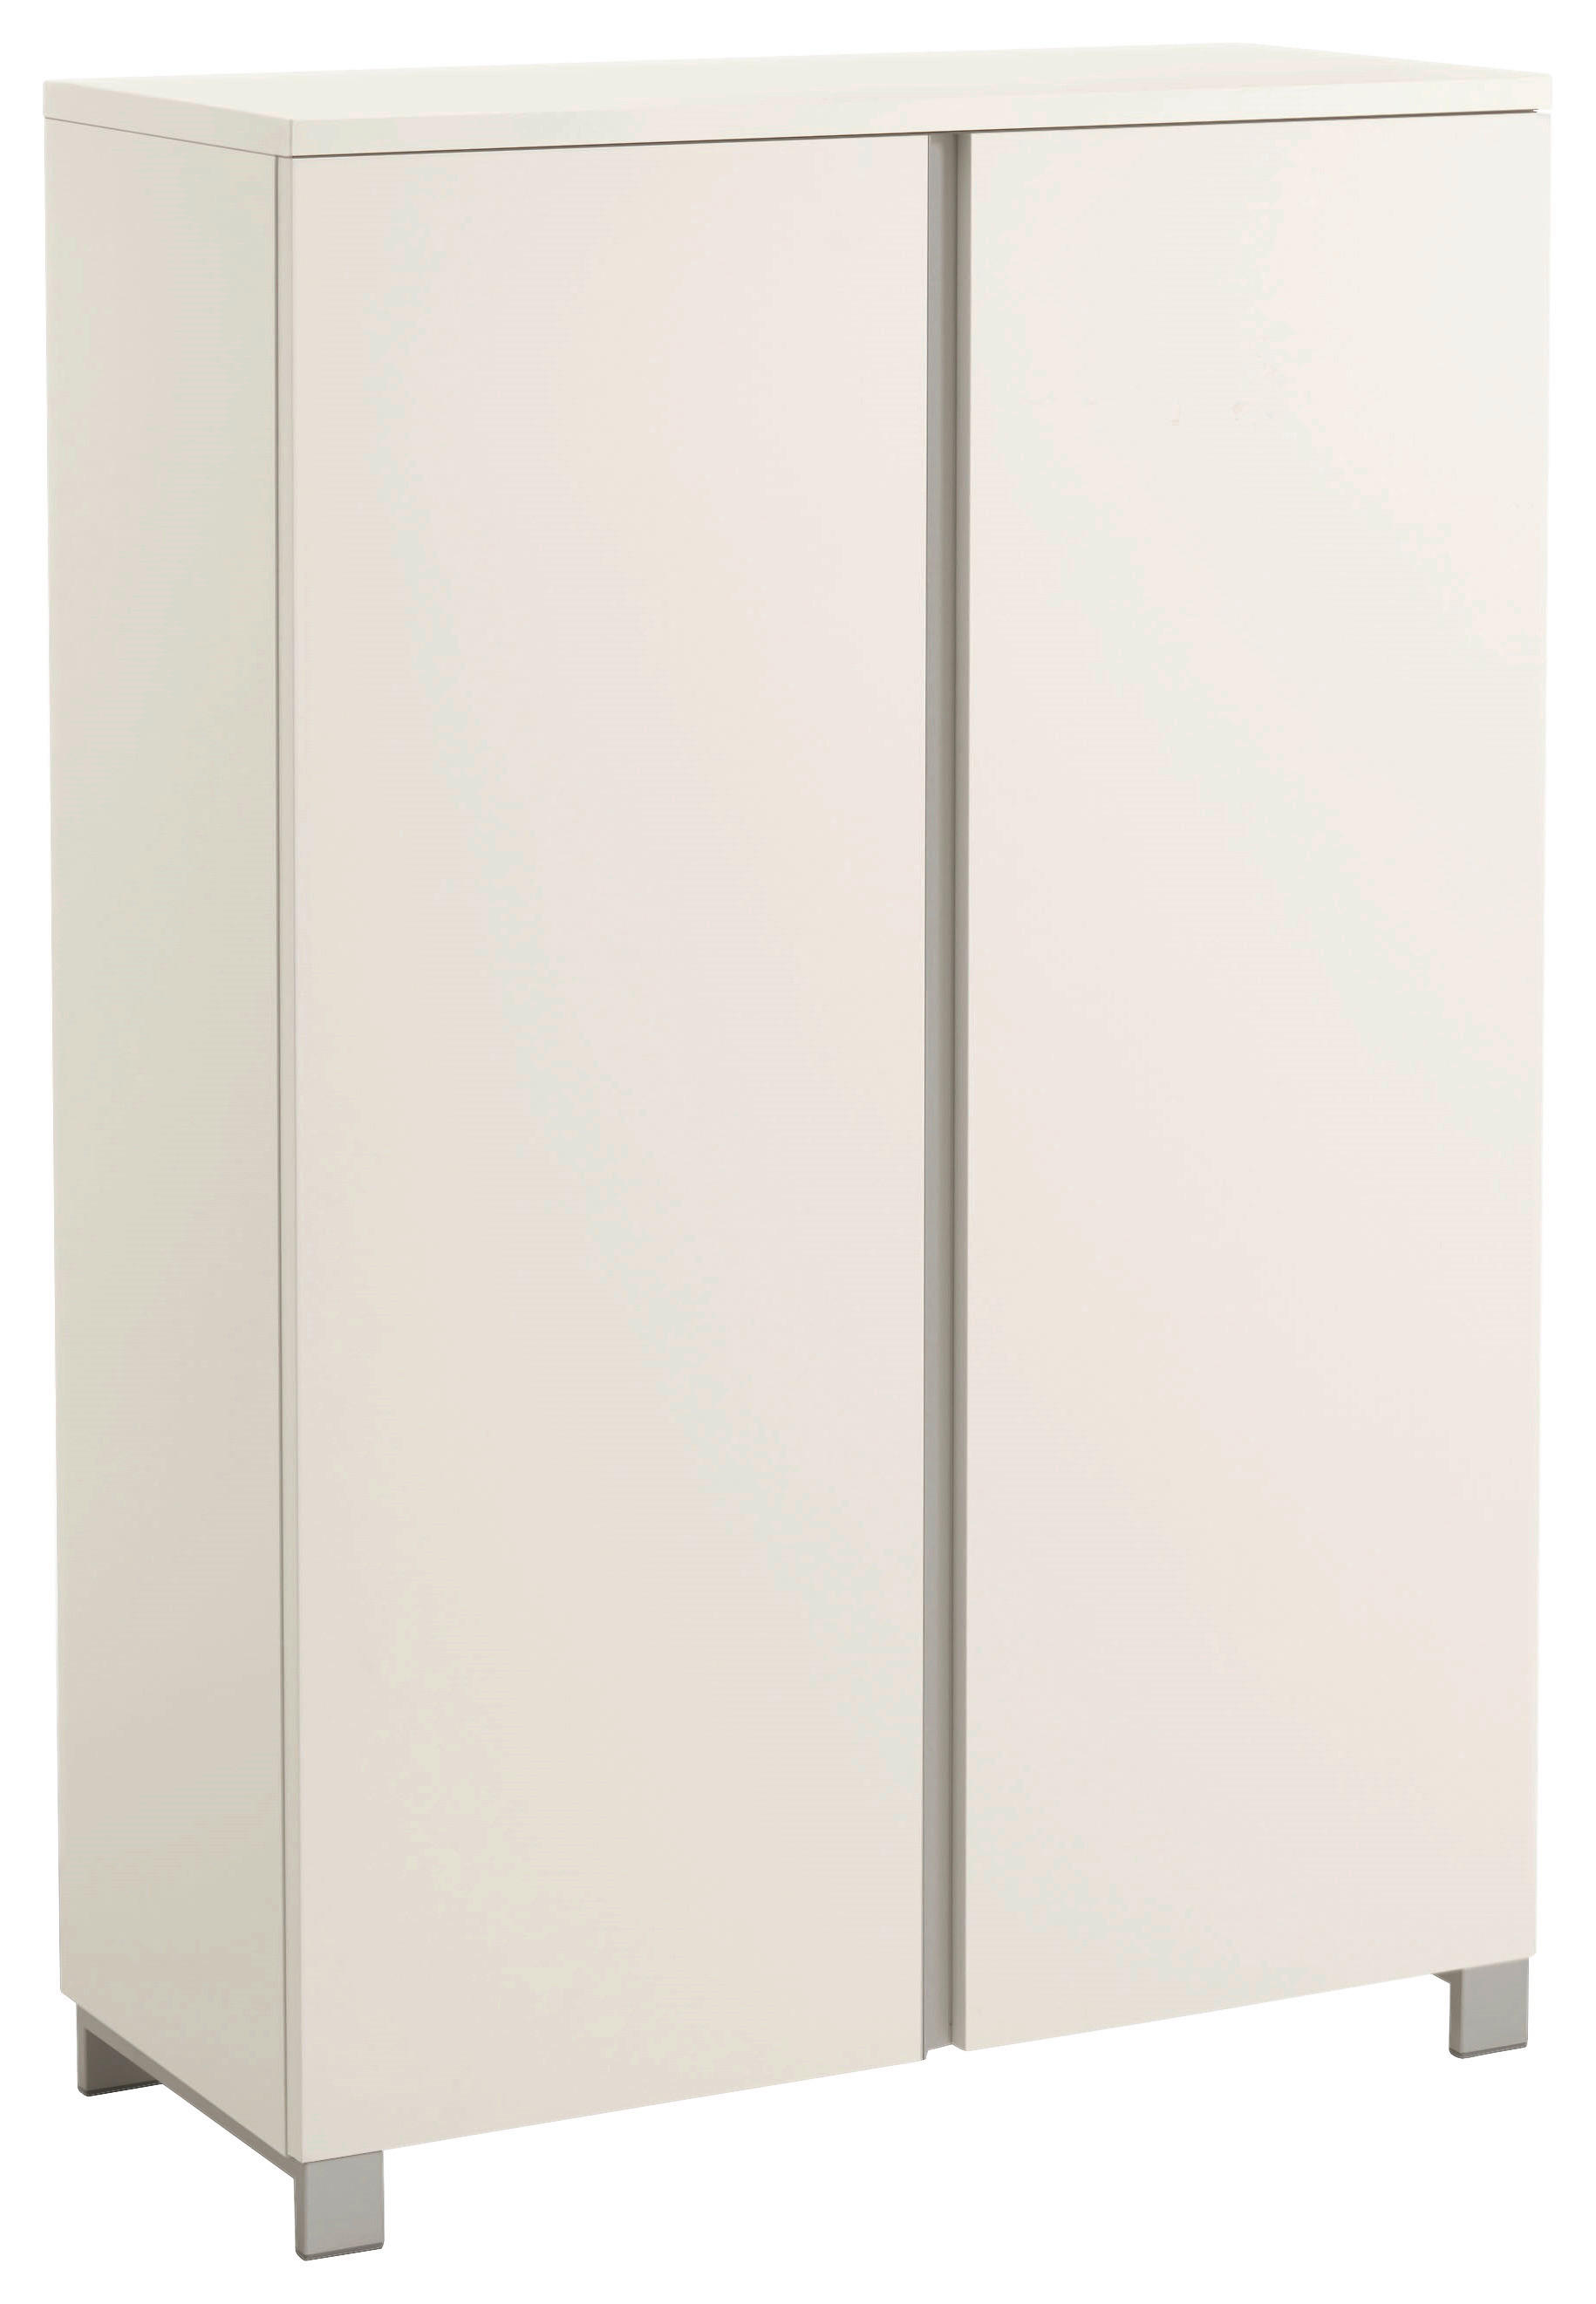 SCHUHSCHRANK Silberfarben, Weiß  - Silberfarben/Weiß, Design, Holzwerkstoff/Metall (84/126/37cm)